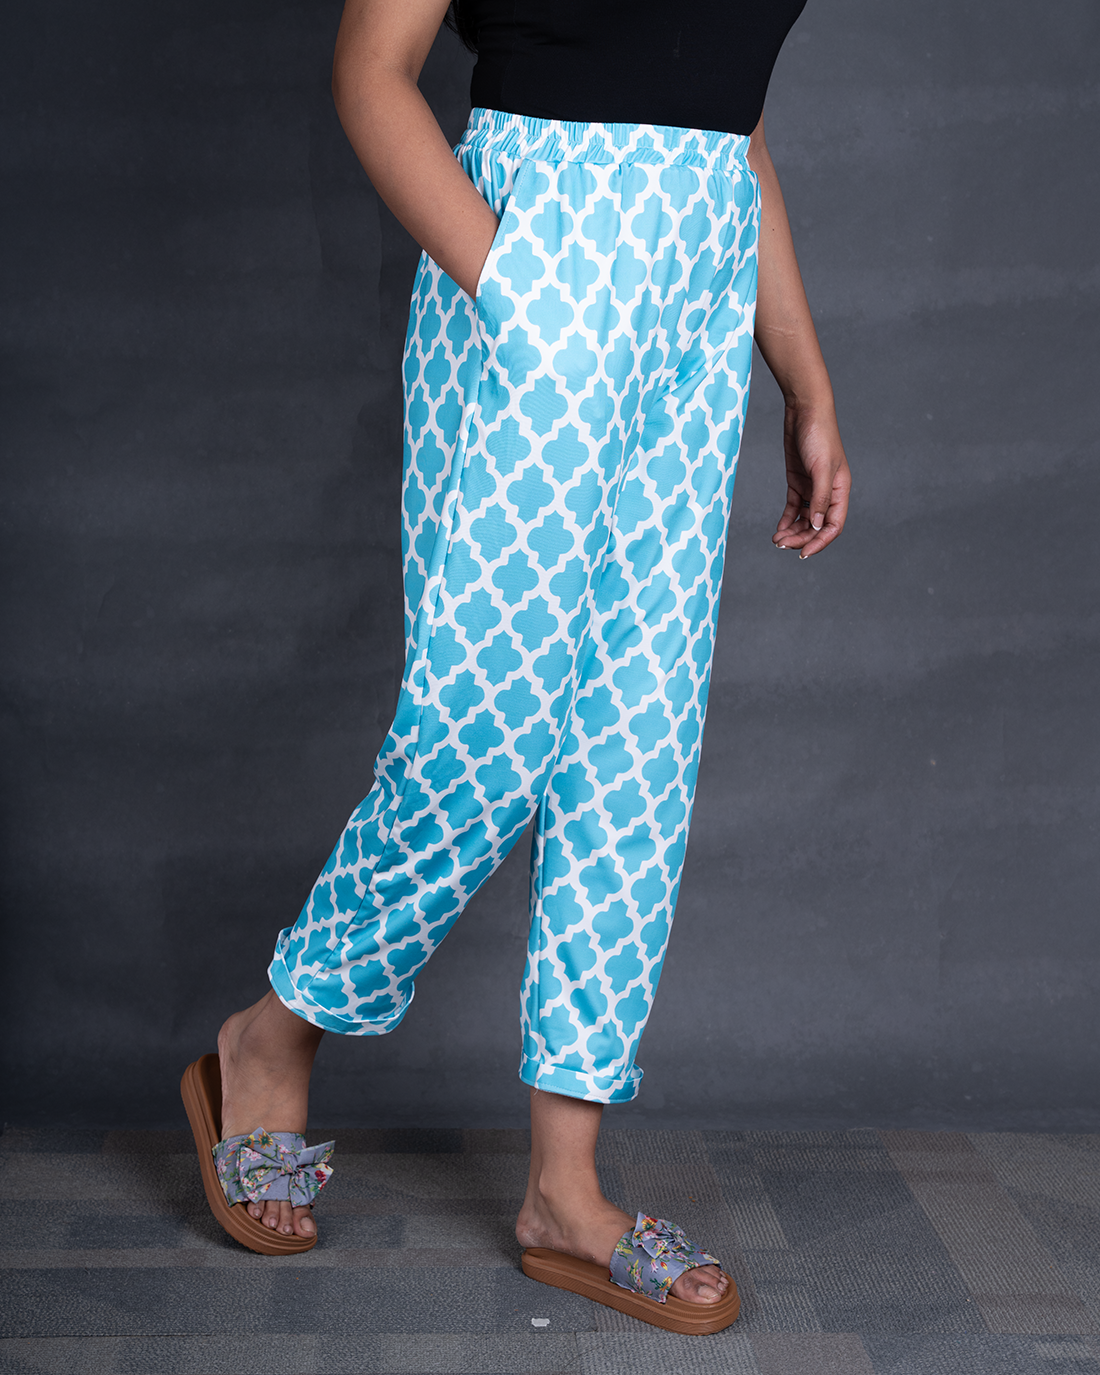 Blue diamond Women Printed Pyjamas (Buy 2 Get 400 OFF)